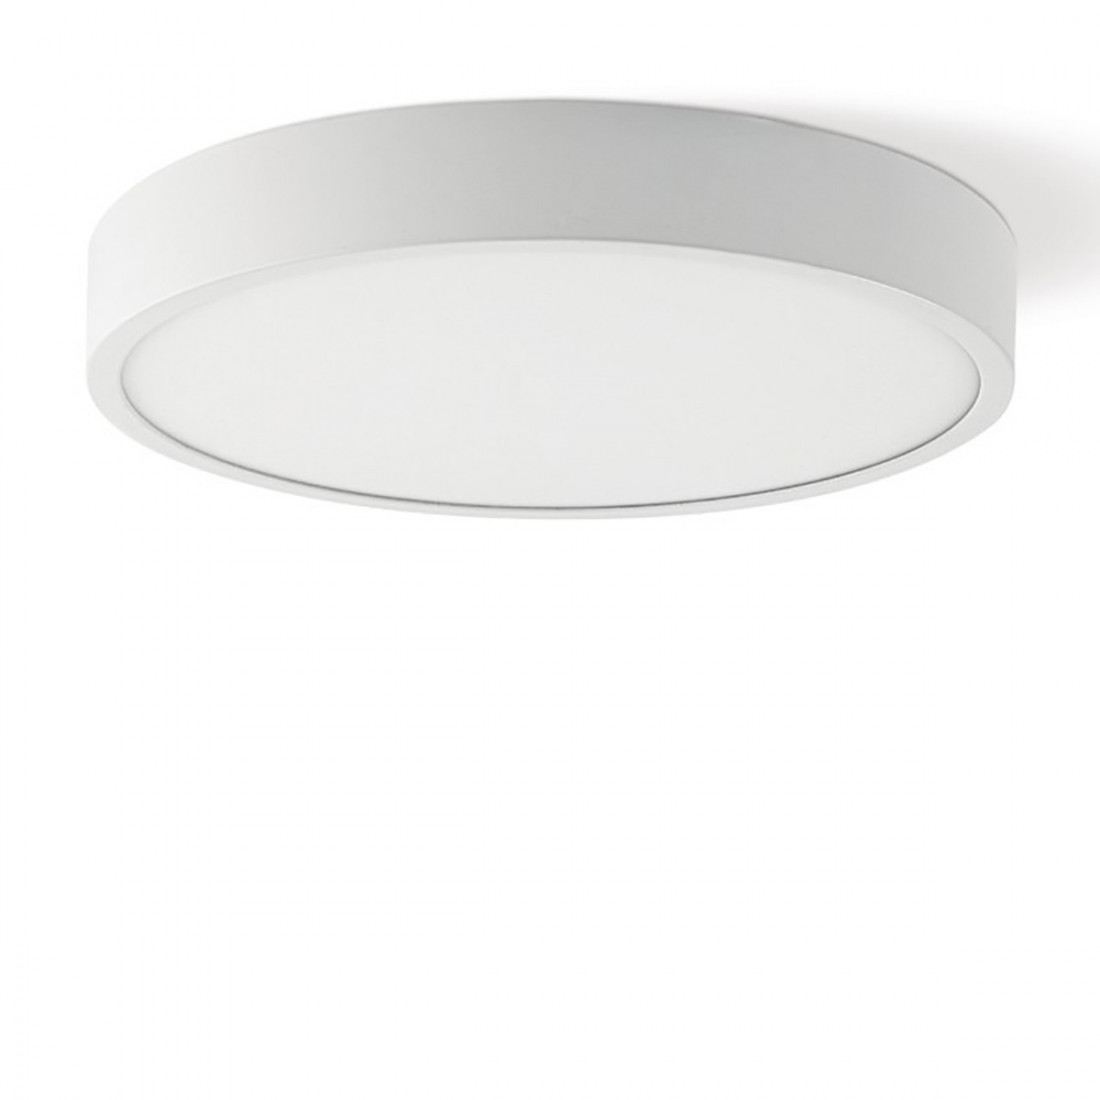 PN-YOUNG 24W LED 1880LM alluminio bianco lampada soffitto parete tonda interno